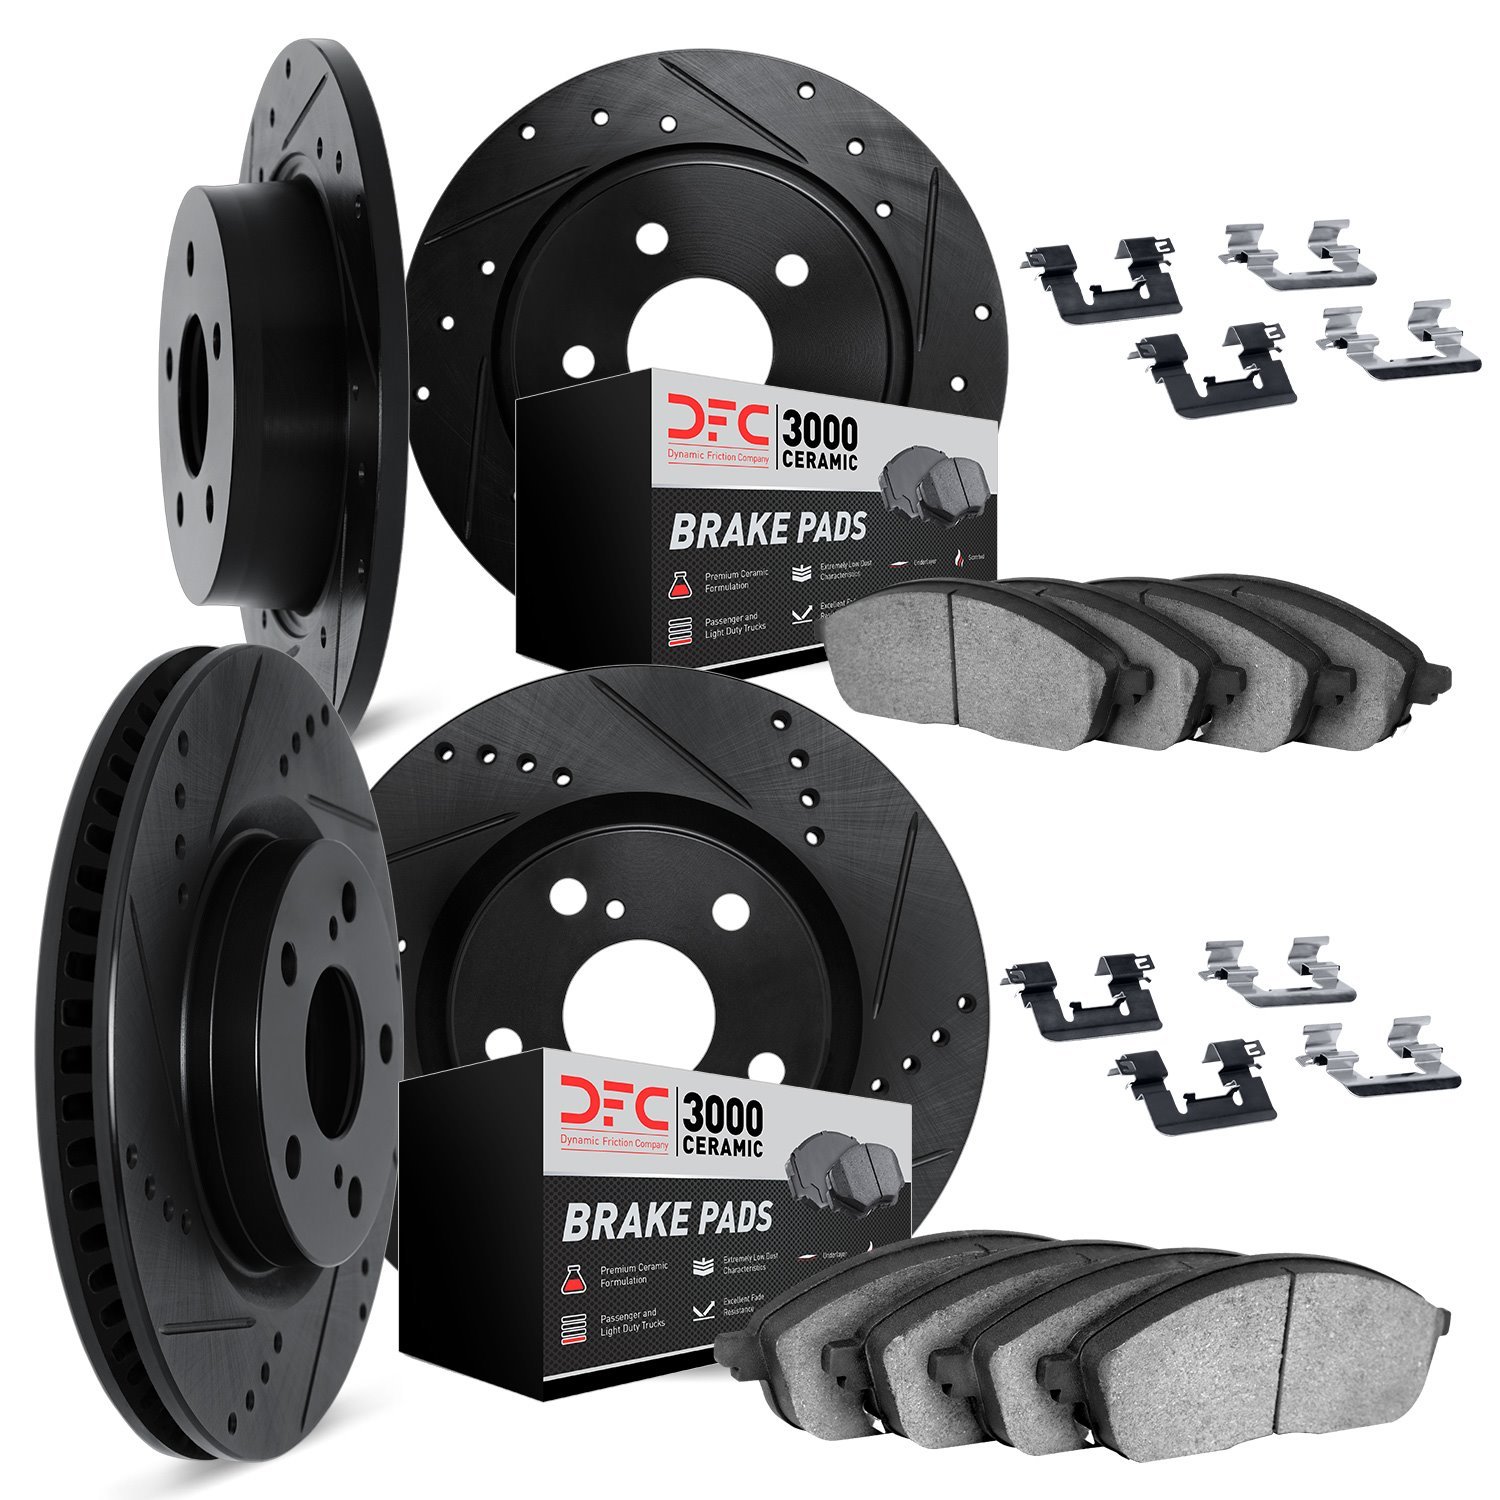 8314-39014 Drilled/Slotted Brake Rotors with 3000-Series Ceramic Brake Pads Kit & Hardware [Black], Fits Select Mitsubishi, Posi